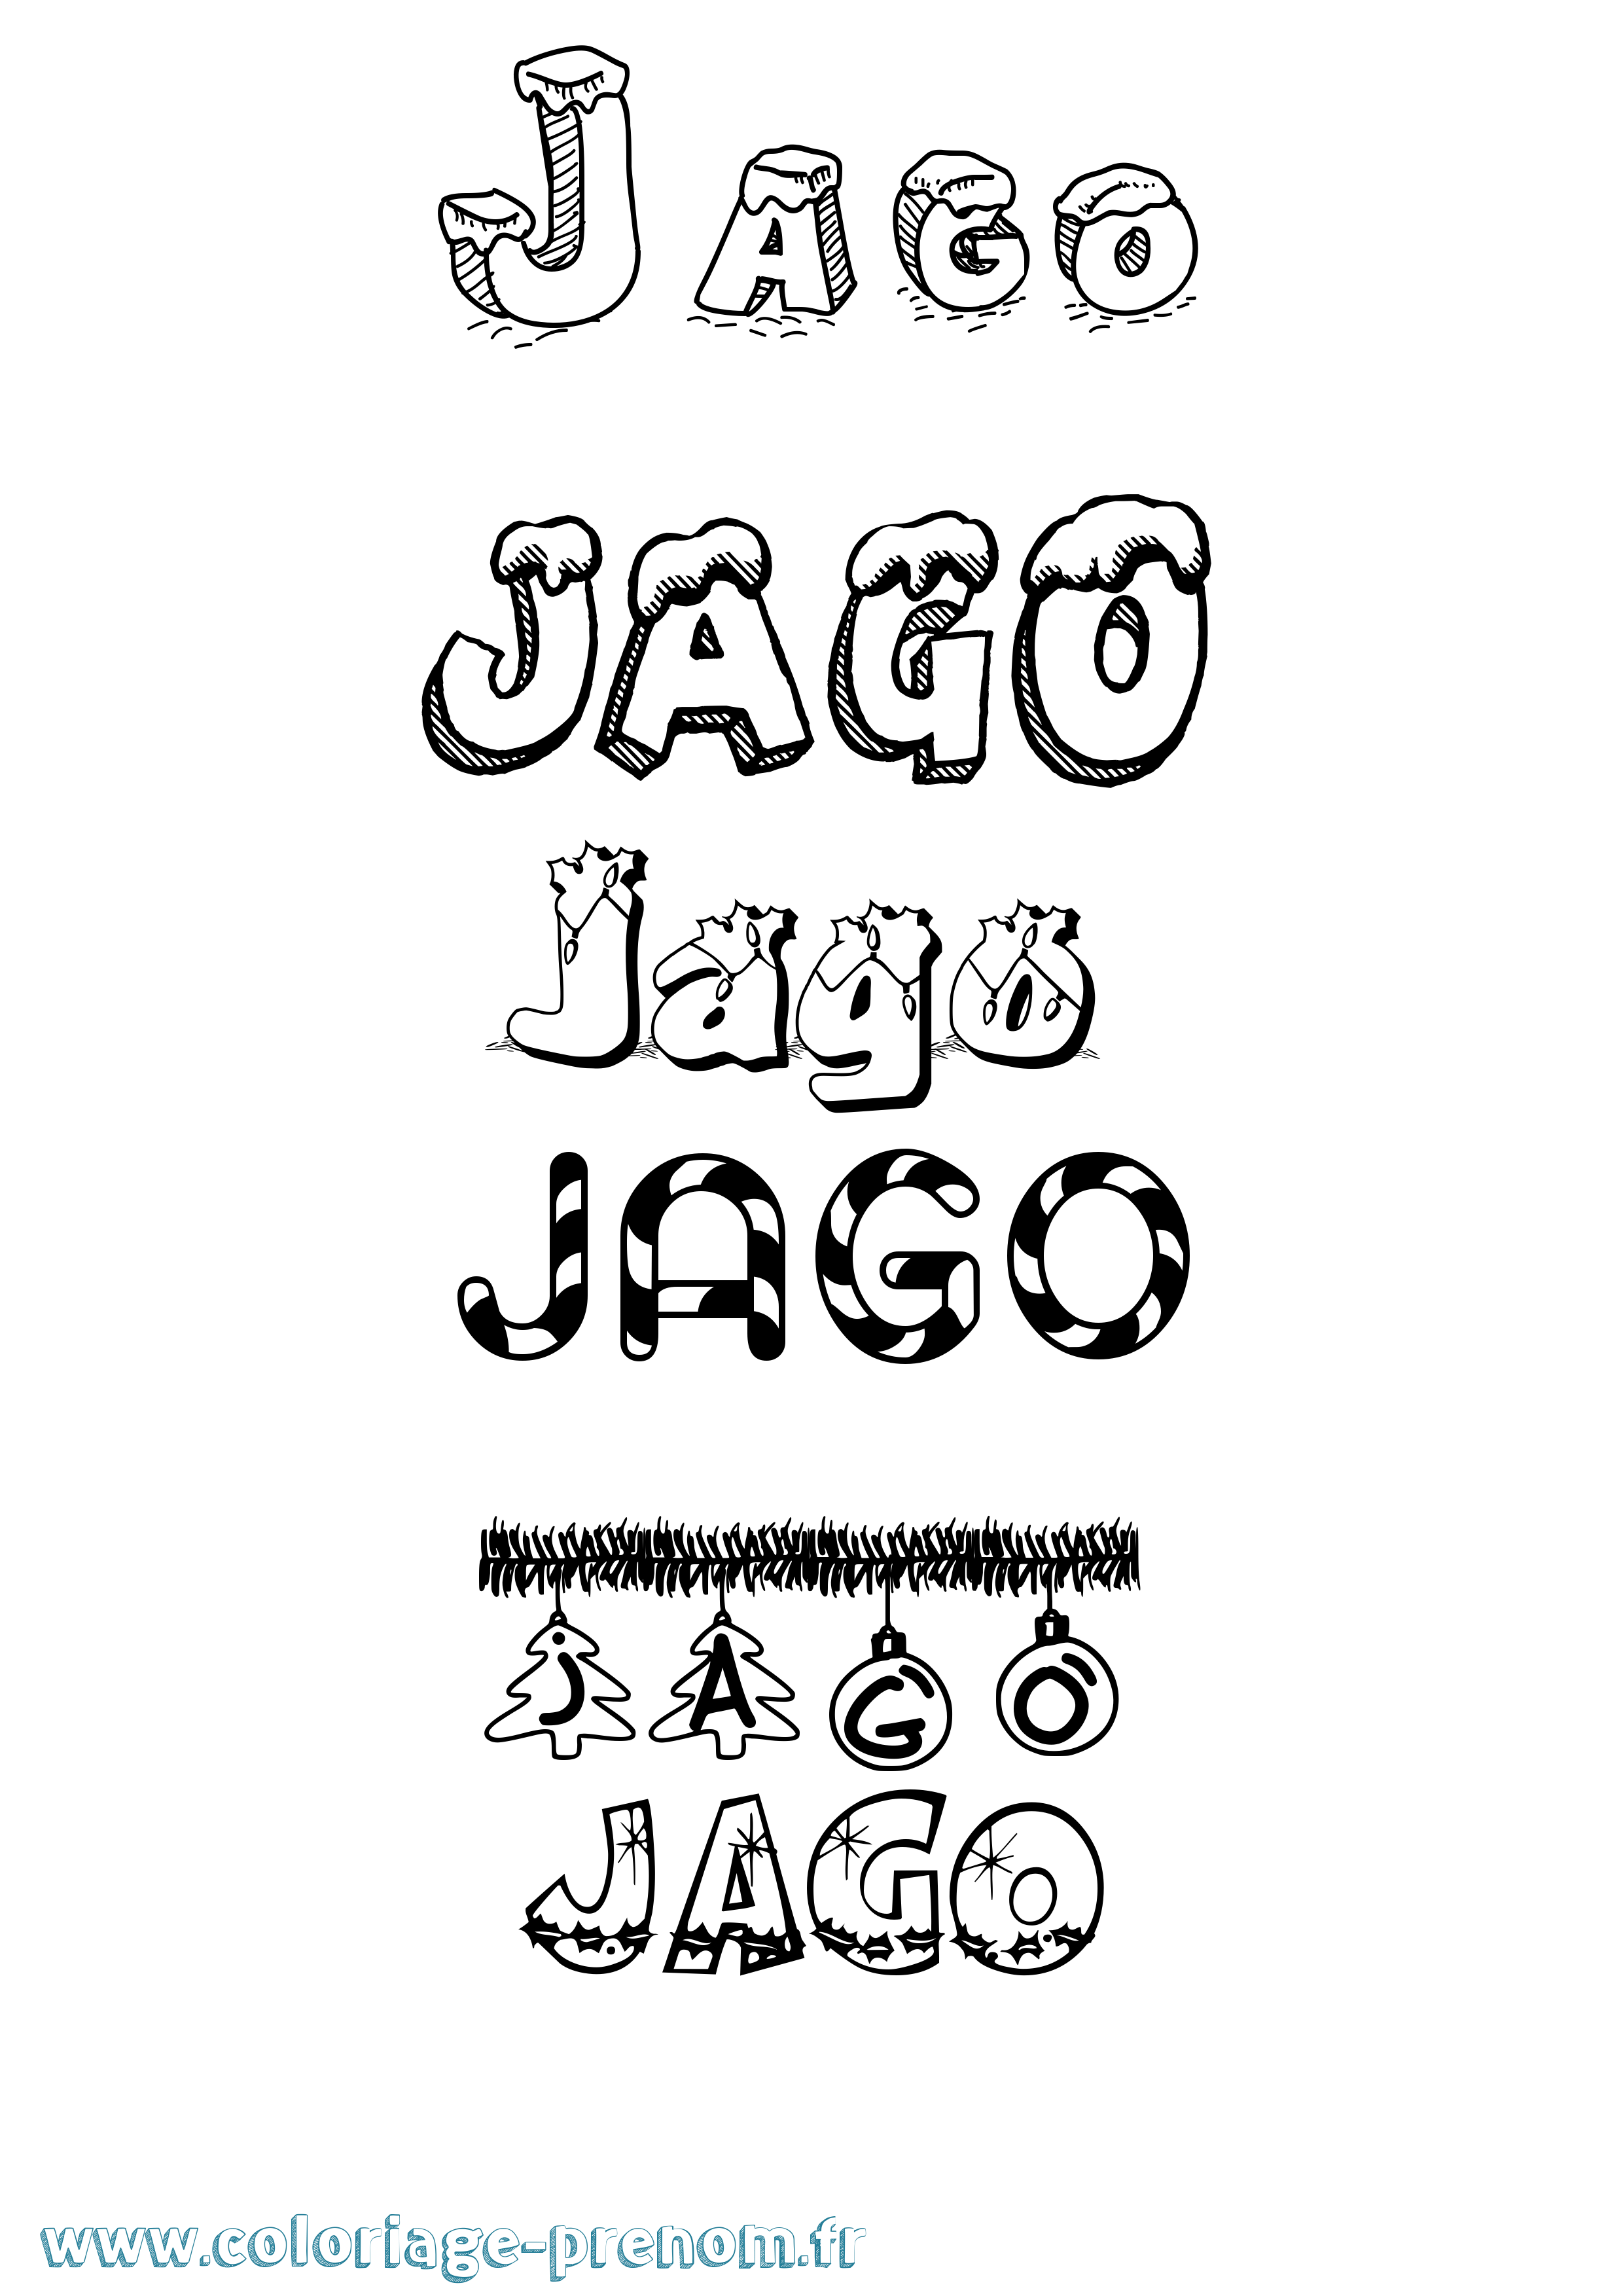 Coloriage prénom Jago Noël